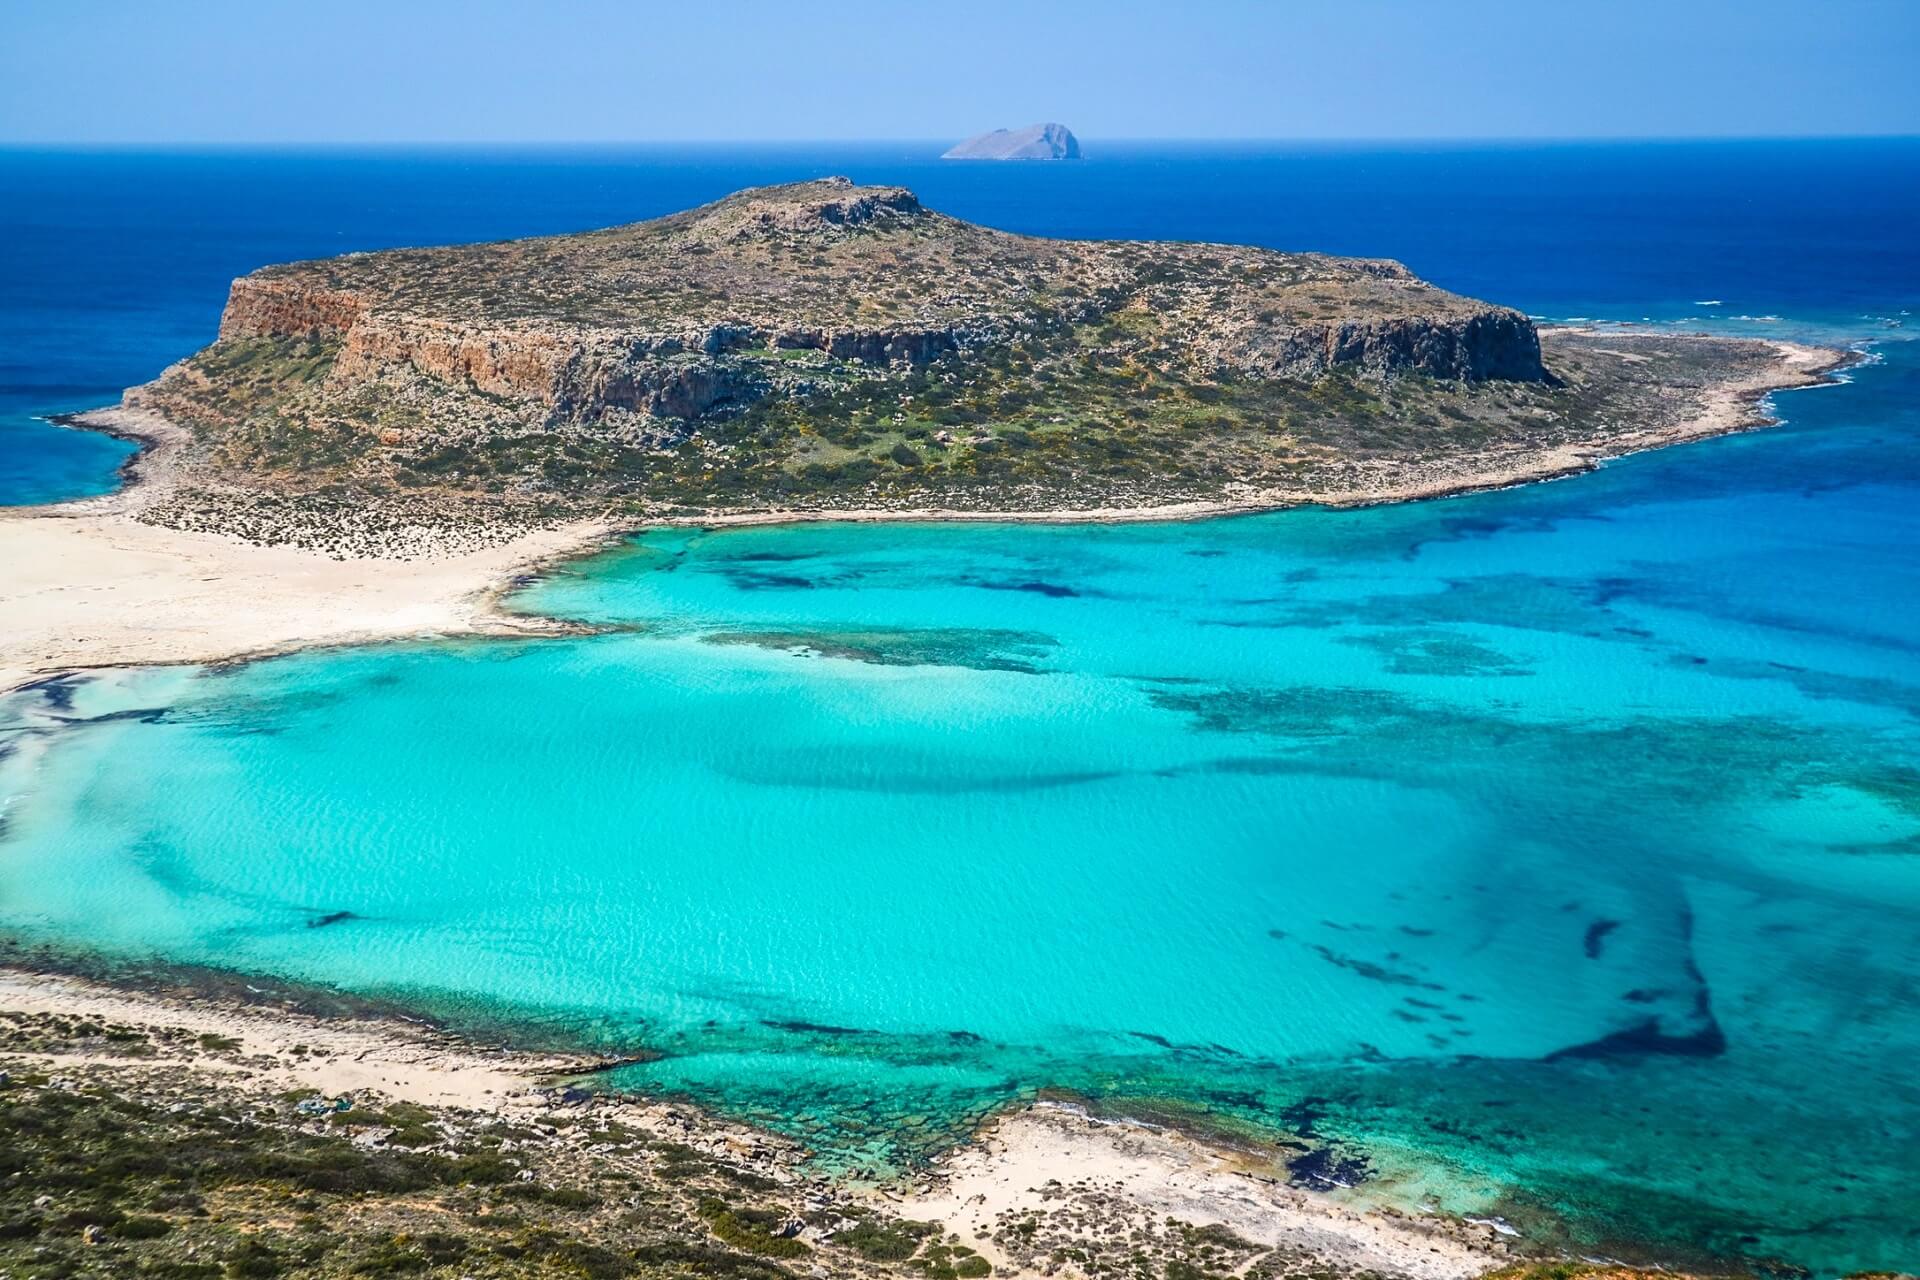 Vacanta de VARA in Creta – doar 112 euro!! (include zbor + cazare 4 nopti)